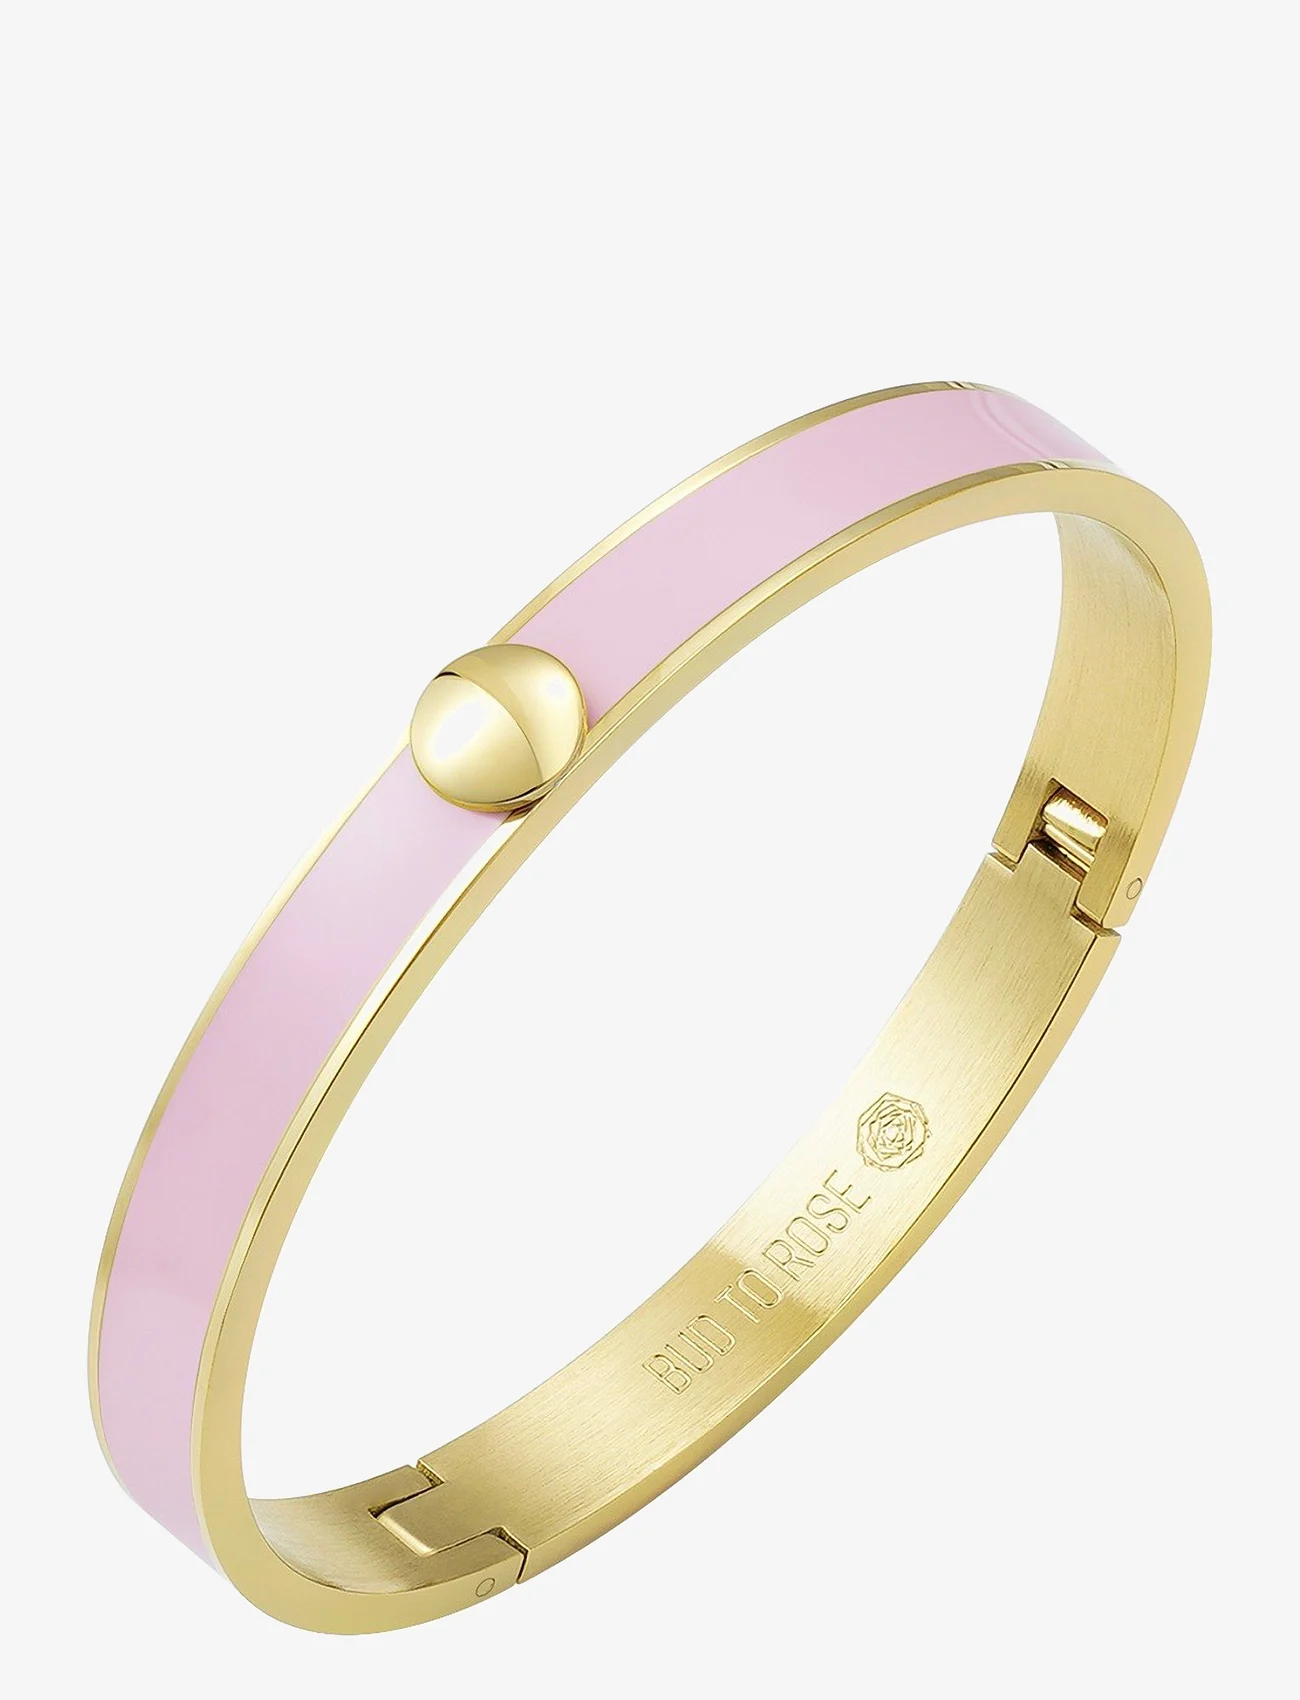 Bud to rose - Capri Enamel Bracelet Lt. - party wear at outlet prices - pink/gold - 0